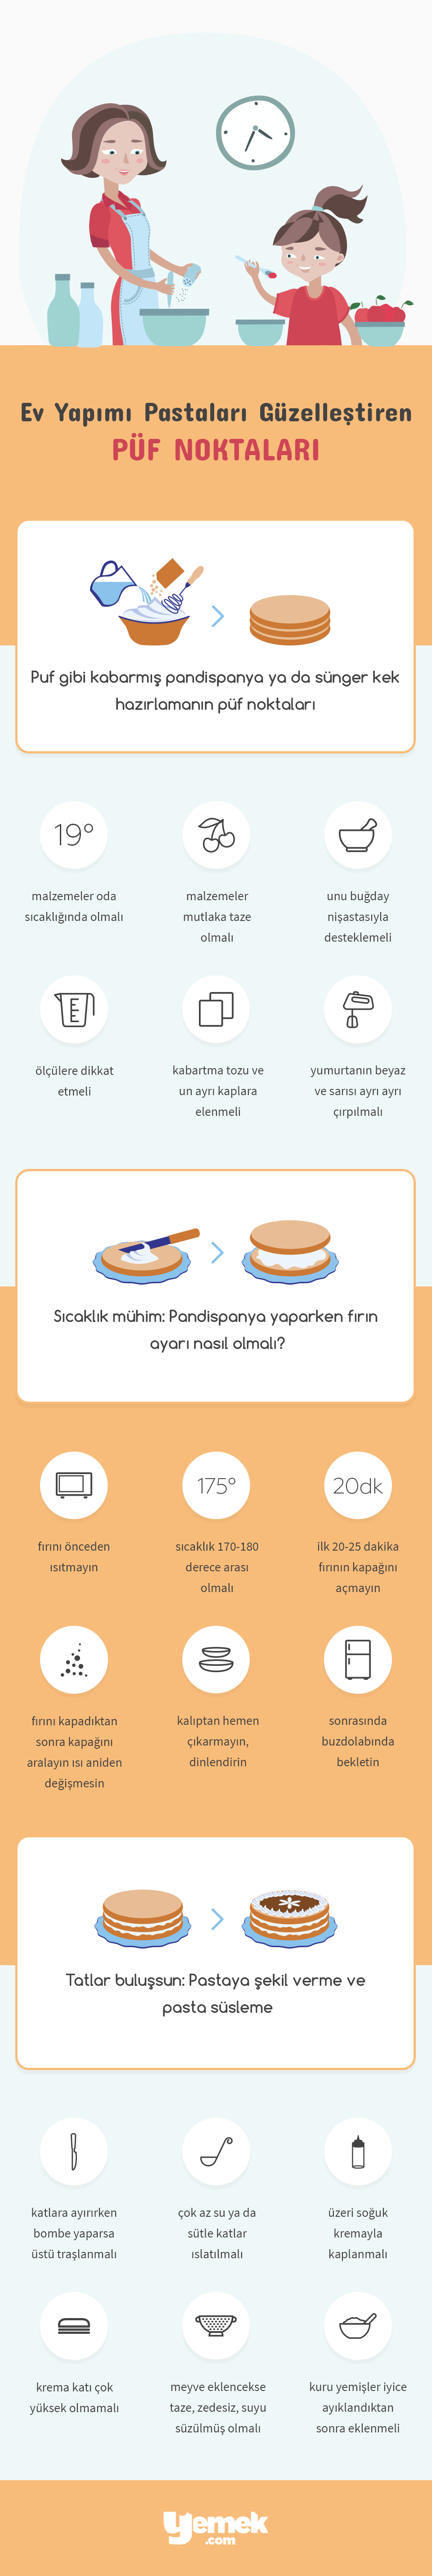 ev-yapimi-pasta-puf-noktalari-infografik